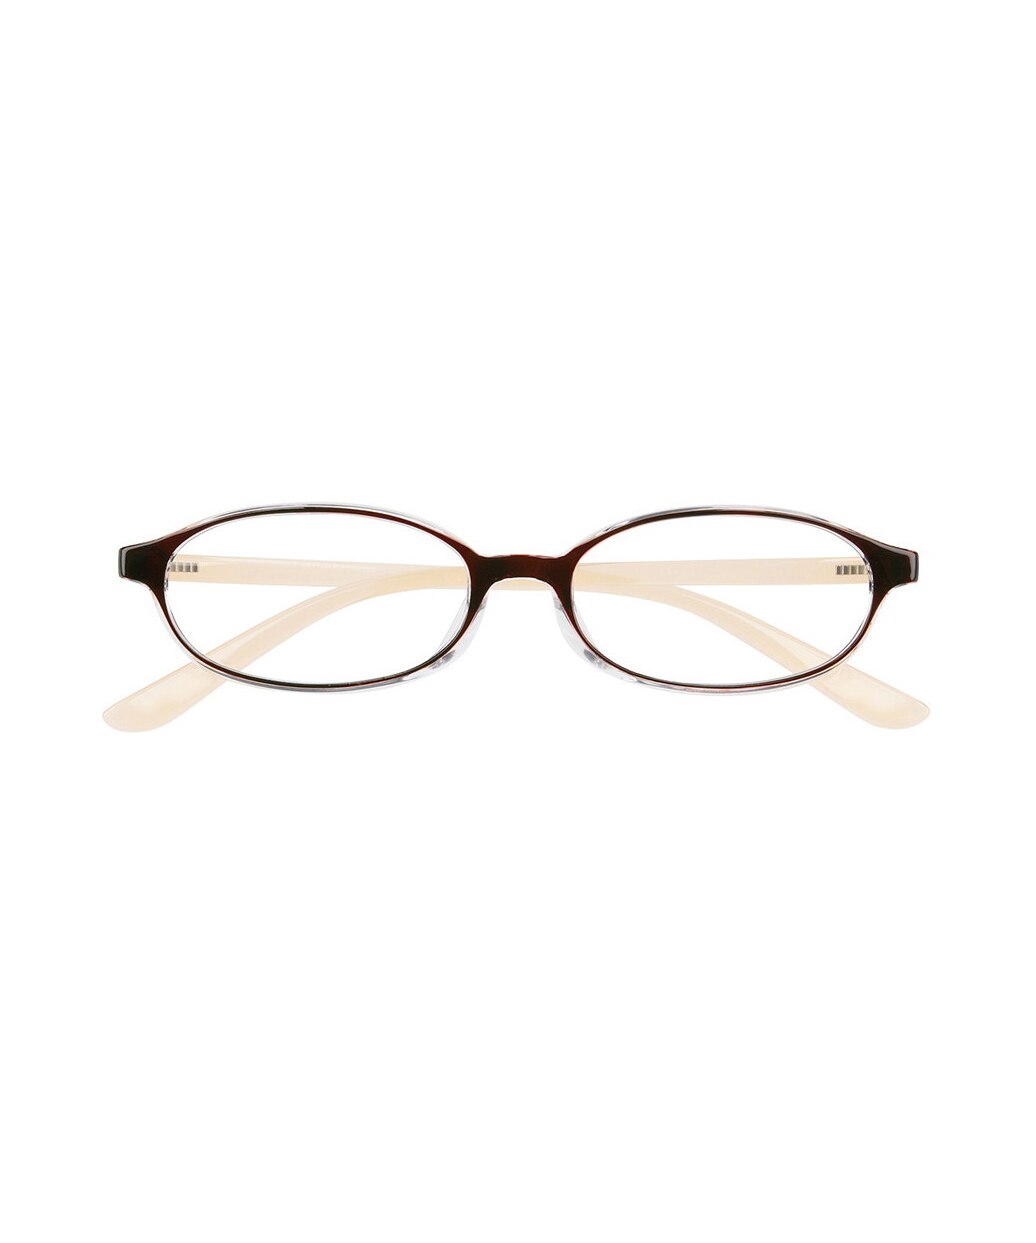 ゾフ +1.50 オーバル型 軽量 老眼鏡リーディンググラス ブラウンZoff